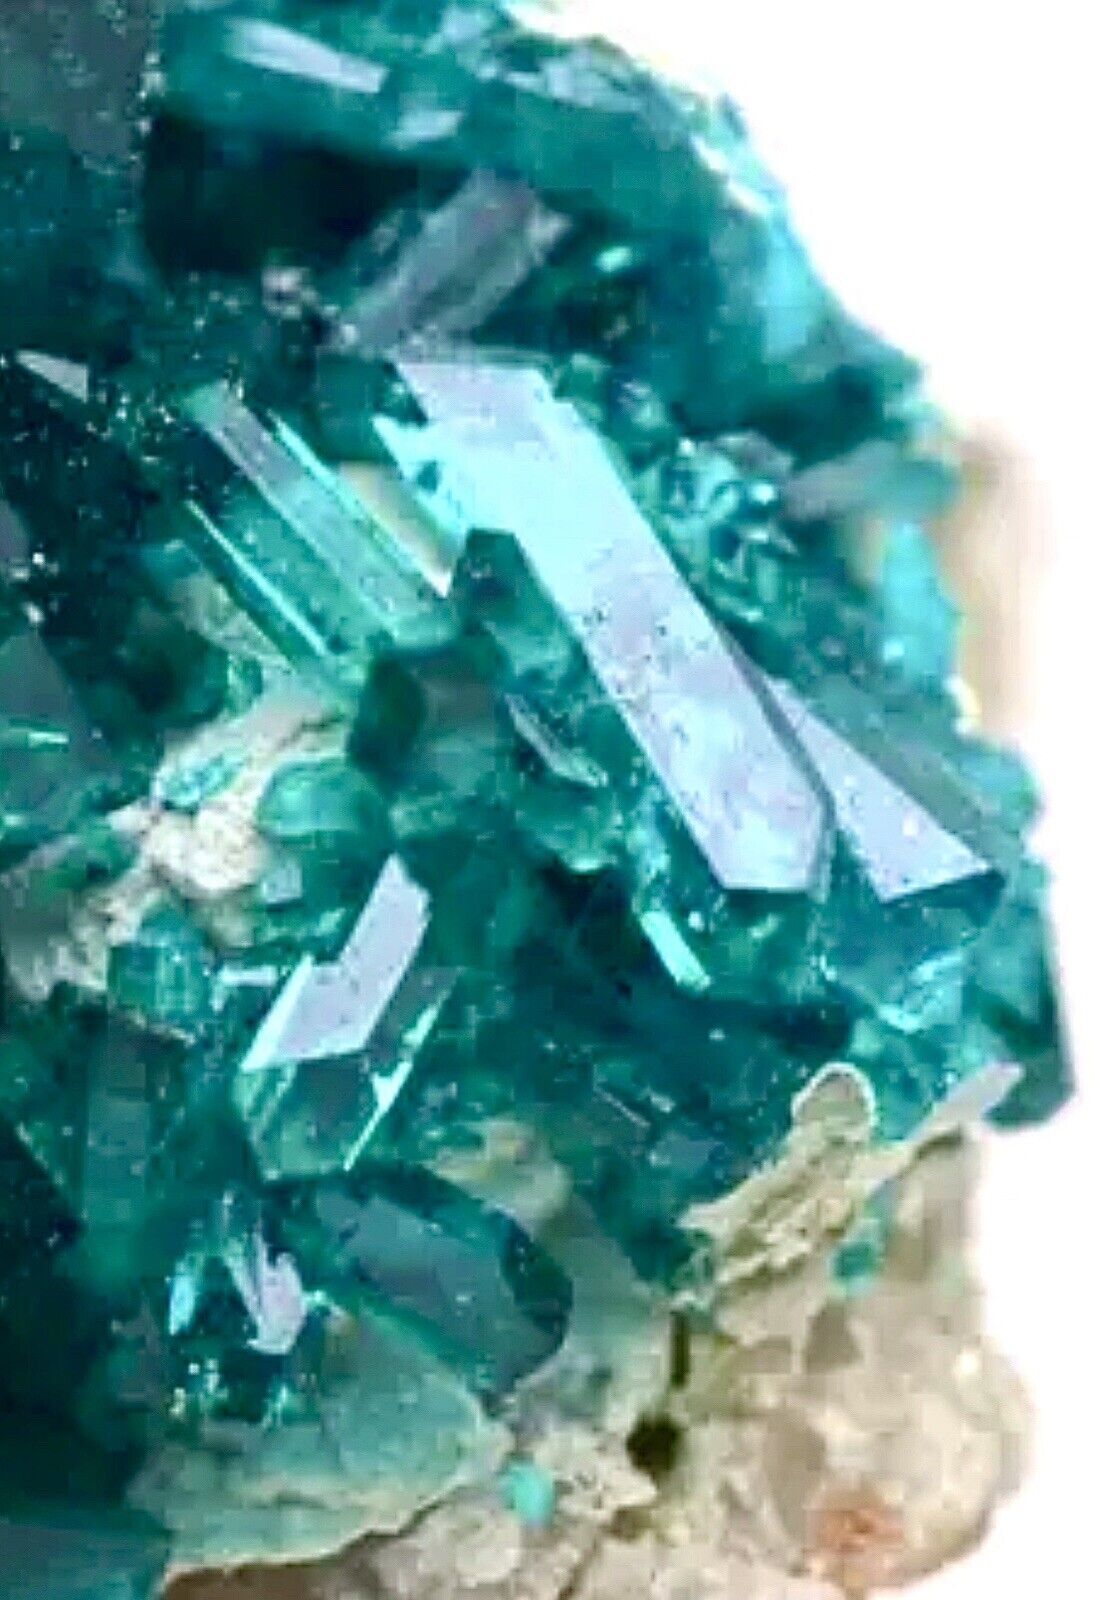 DIOPTASE Crystal Cluster Emerald Green Mineral Natural Specimen Gem Collection